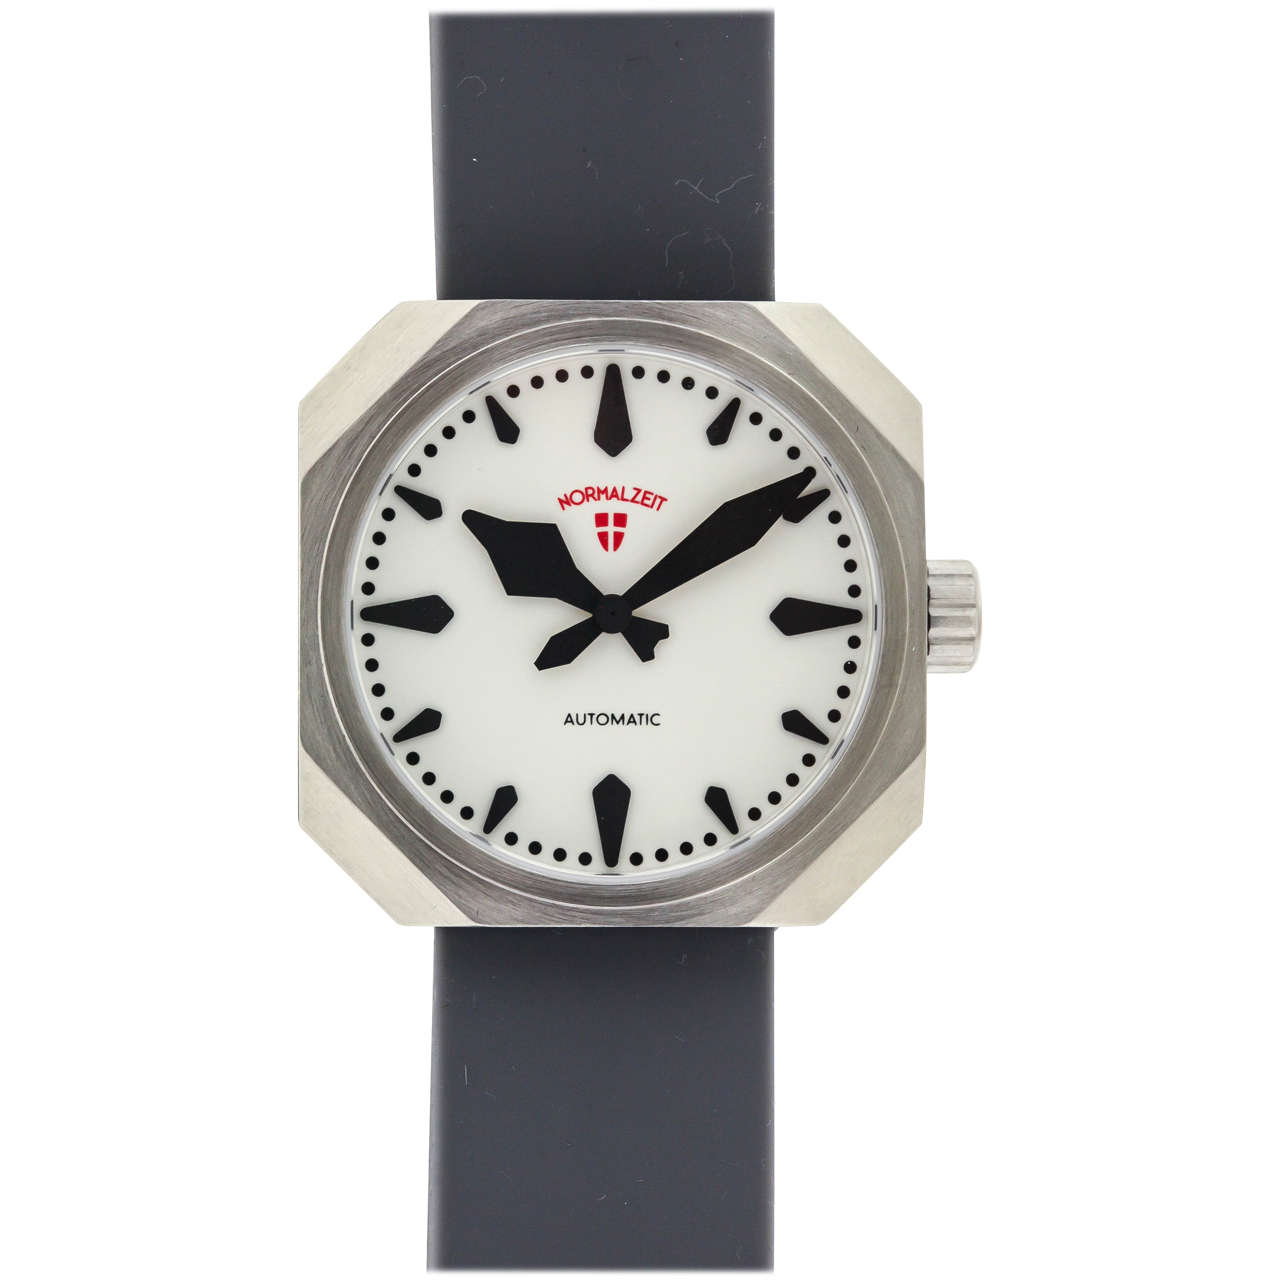 Lichterloh Stainless Steel Normal Zeit Wristwatch at 1stDibs